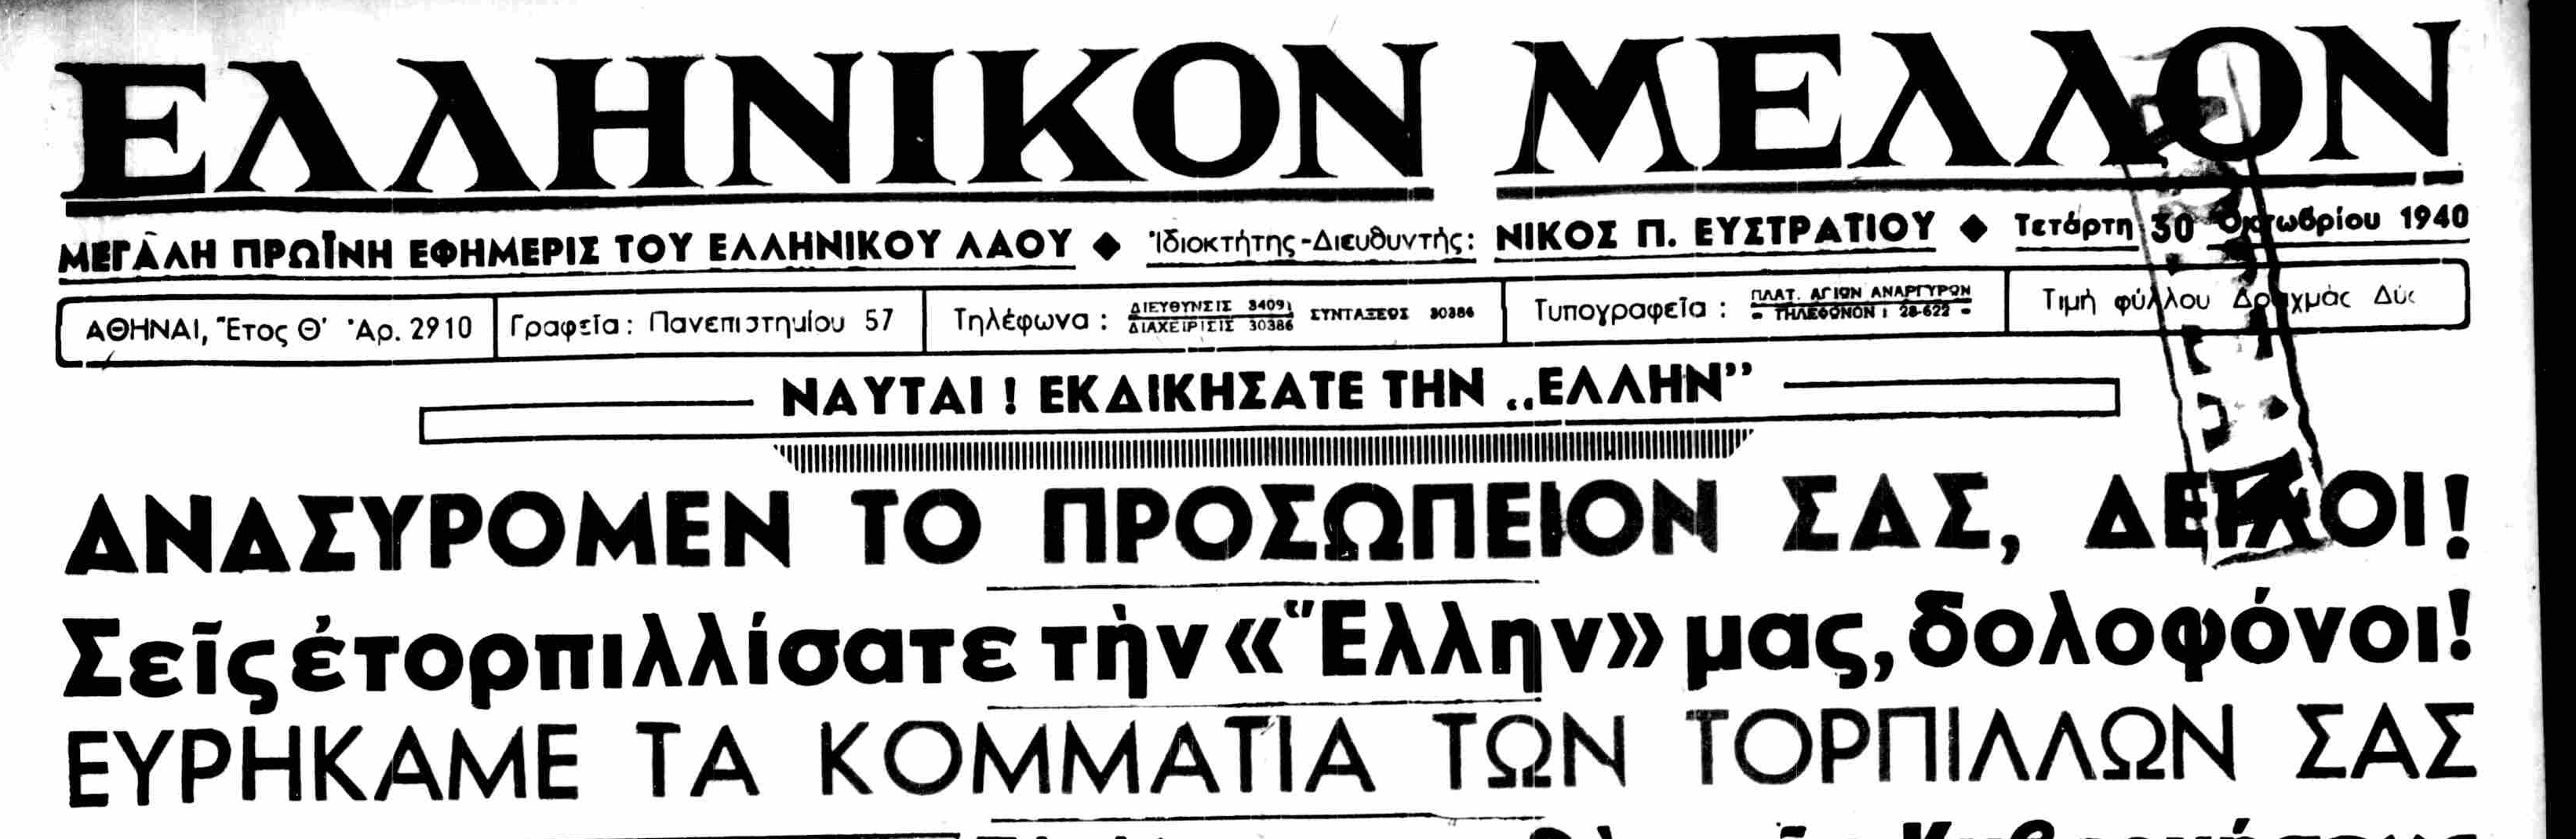 ΕΛΛΗΝΙΚΟΝ ΜΕΛΛΟΝ 30-10-1940.png